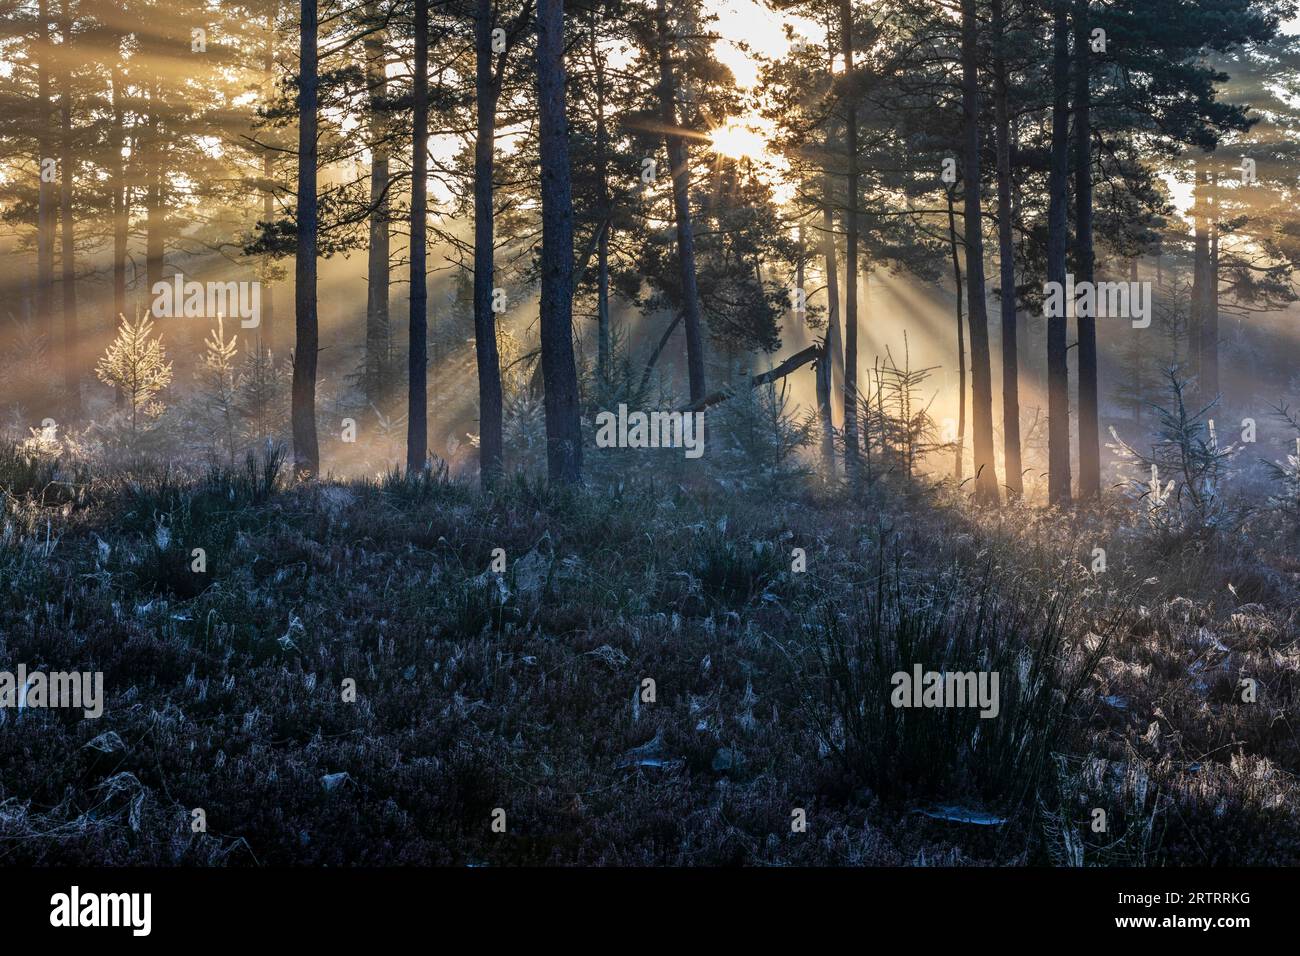 Dopo una notte fredda, i primi raggi del sole del mattino si fanno strada attraverso la nebbia in una foresta, Daenemark, Danimarca Foto Stock